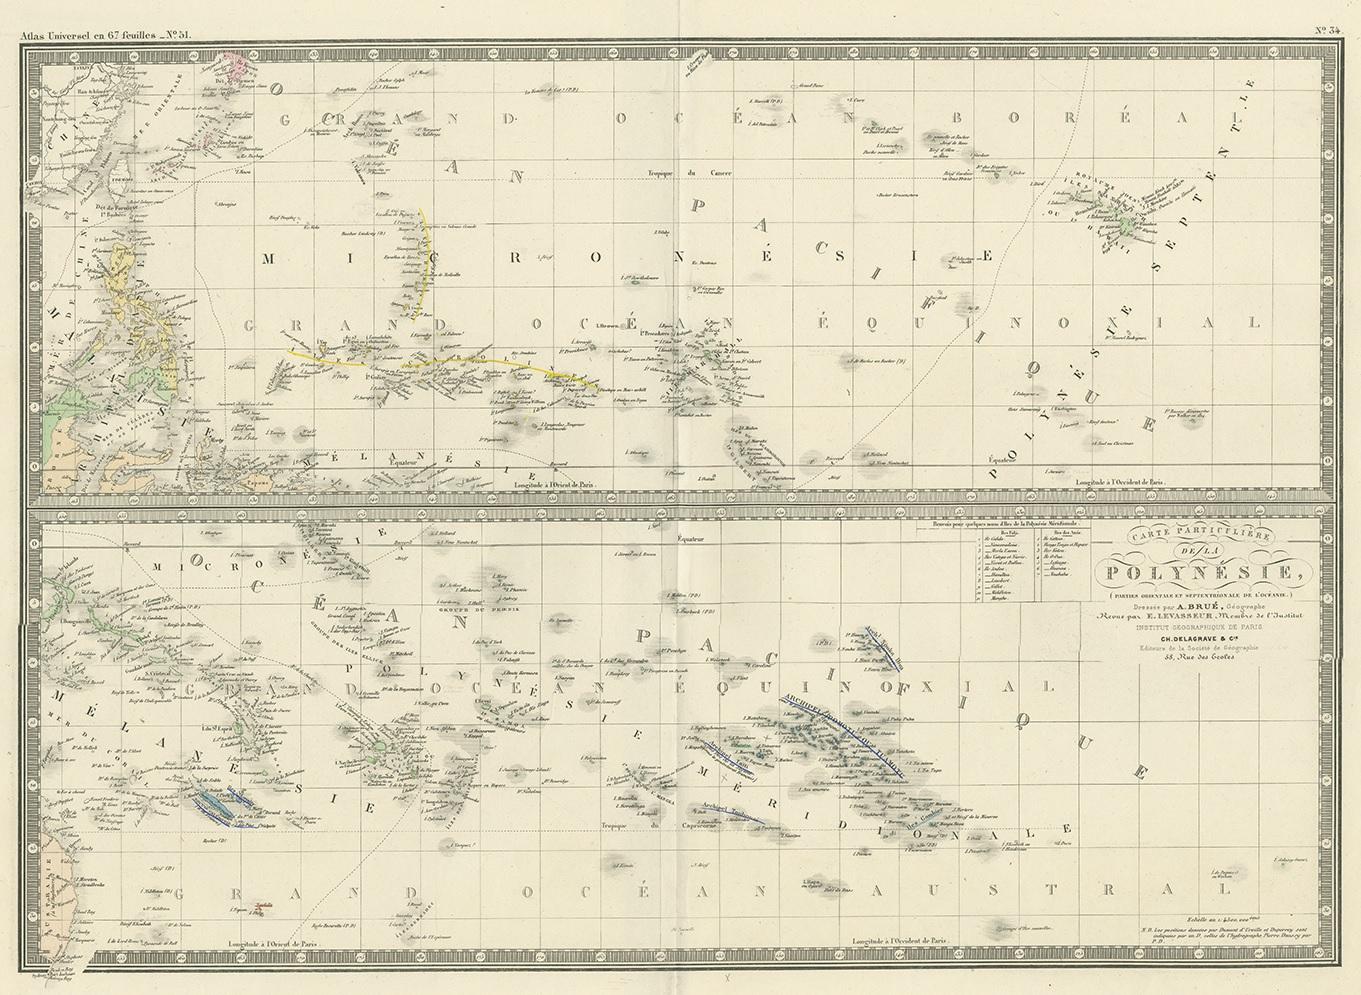 Antique map titled 'Carte particuliere de la Polynesia'. Large map of Polynesia. This map originates from 'Atlas de Géographie Moderne Physique et Politique' by A. Levasseur. Published, 1875.